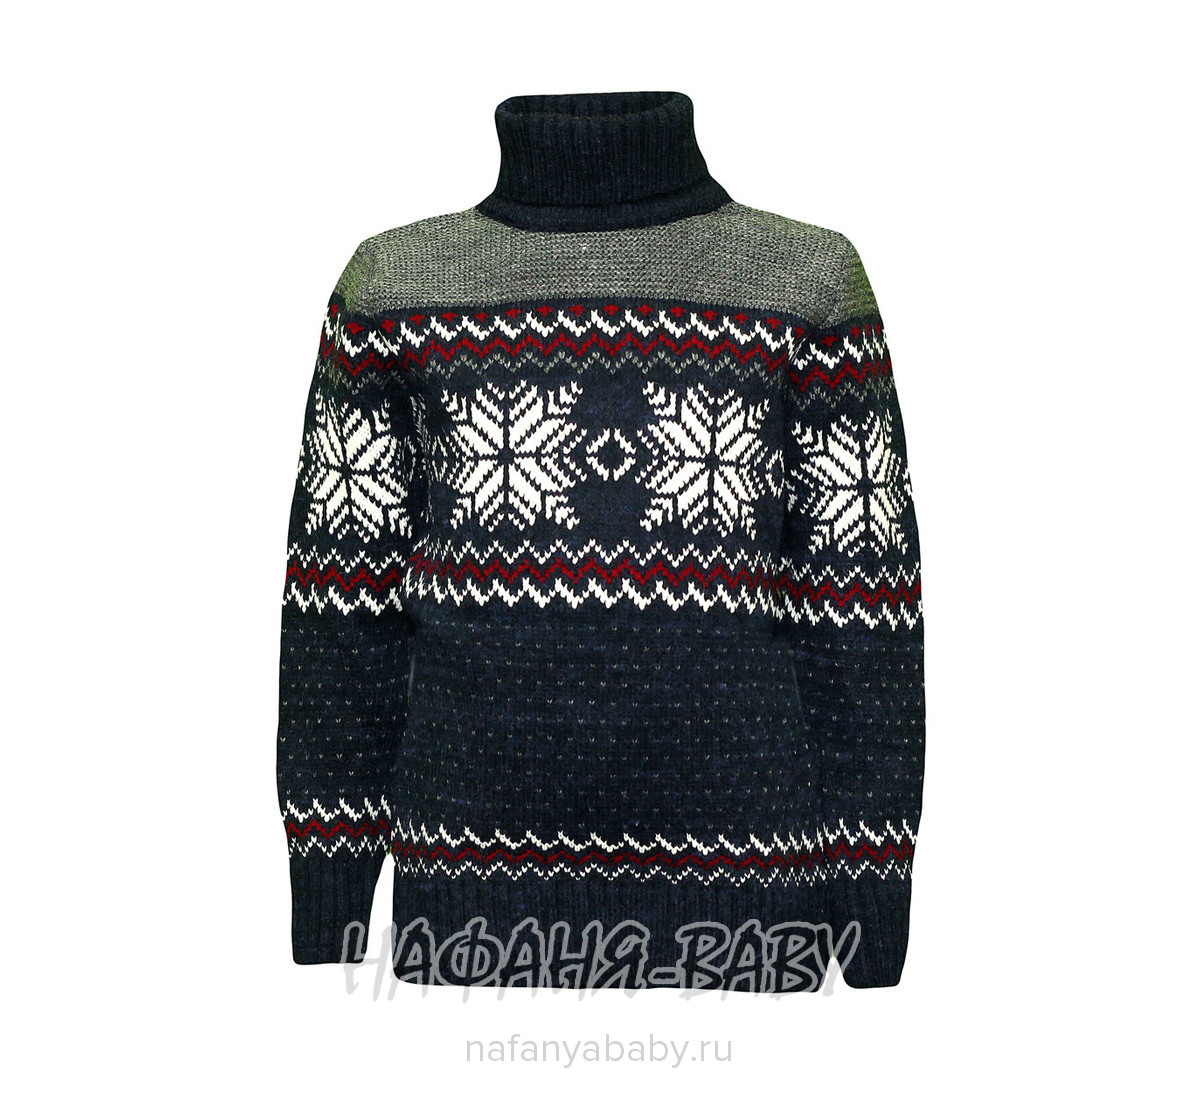 Вязанный теплый свитер RAIN арт: 10355, 10-15 лет, 5-9 лет, оптом Турция